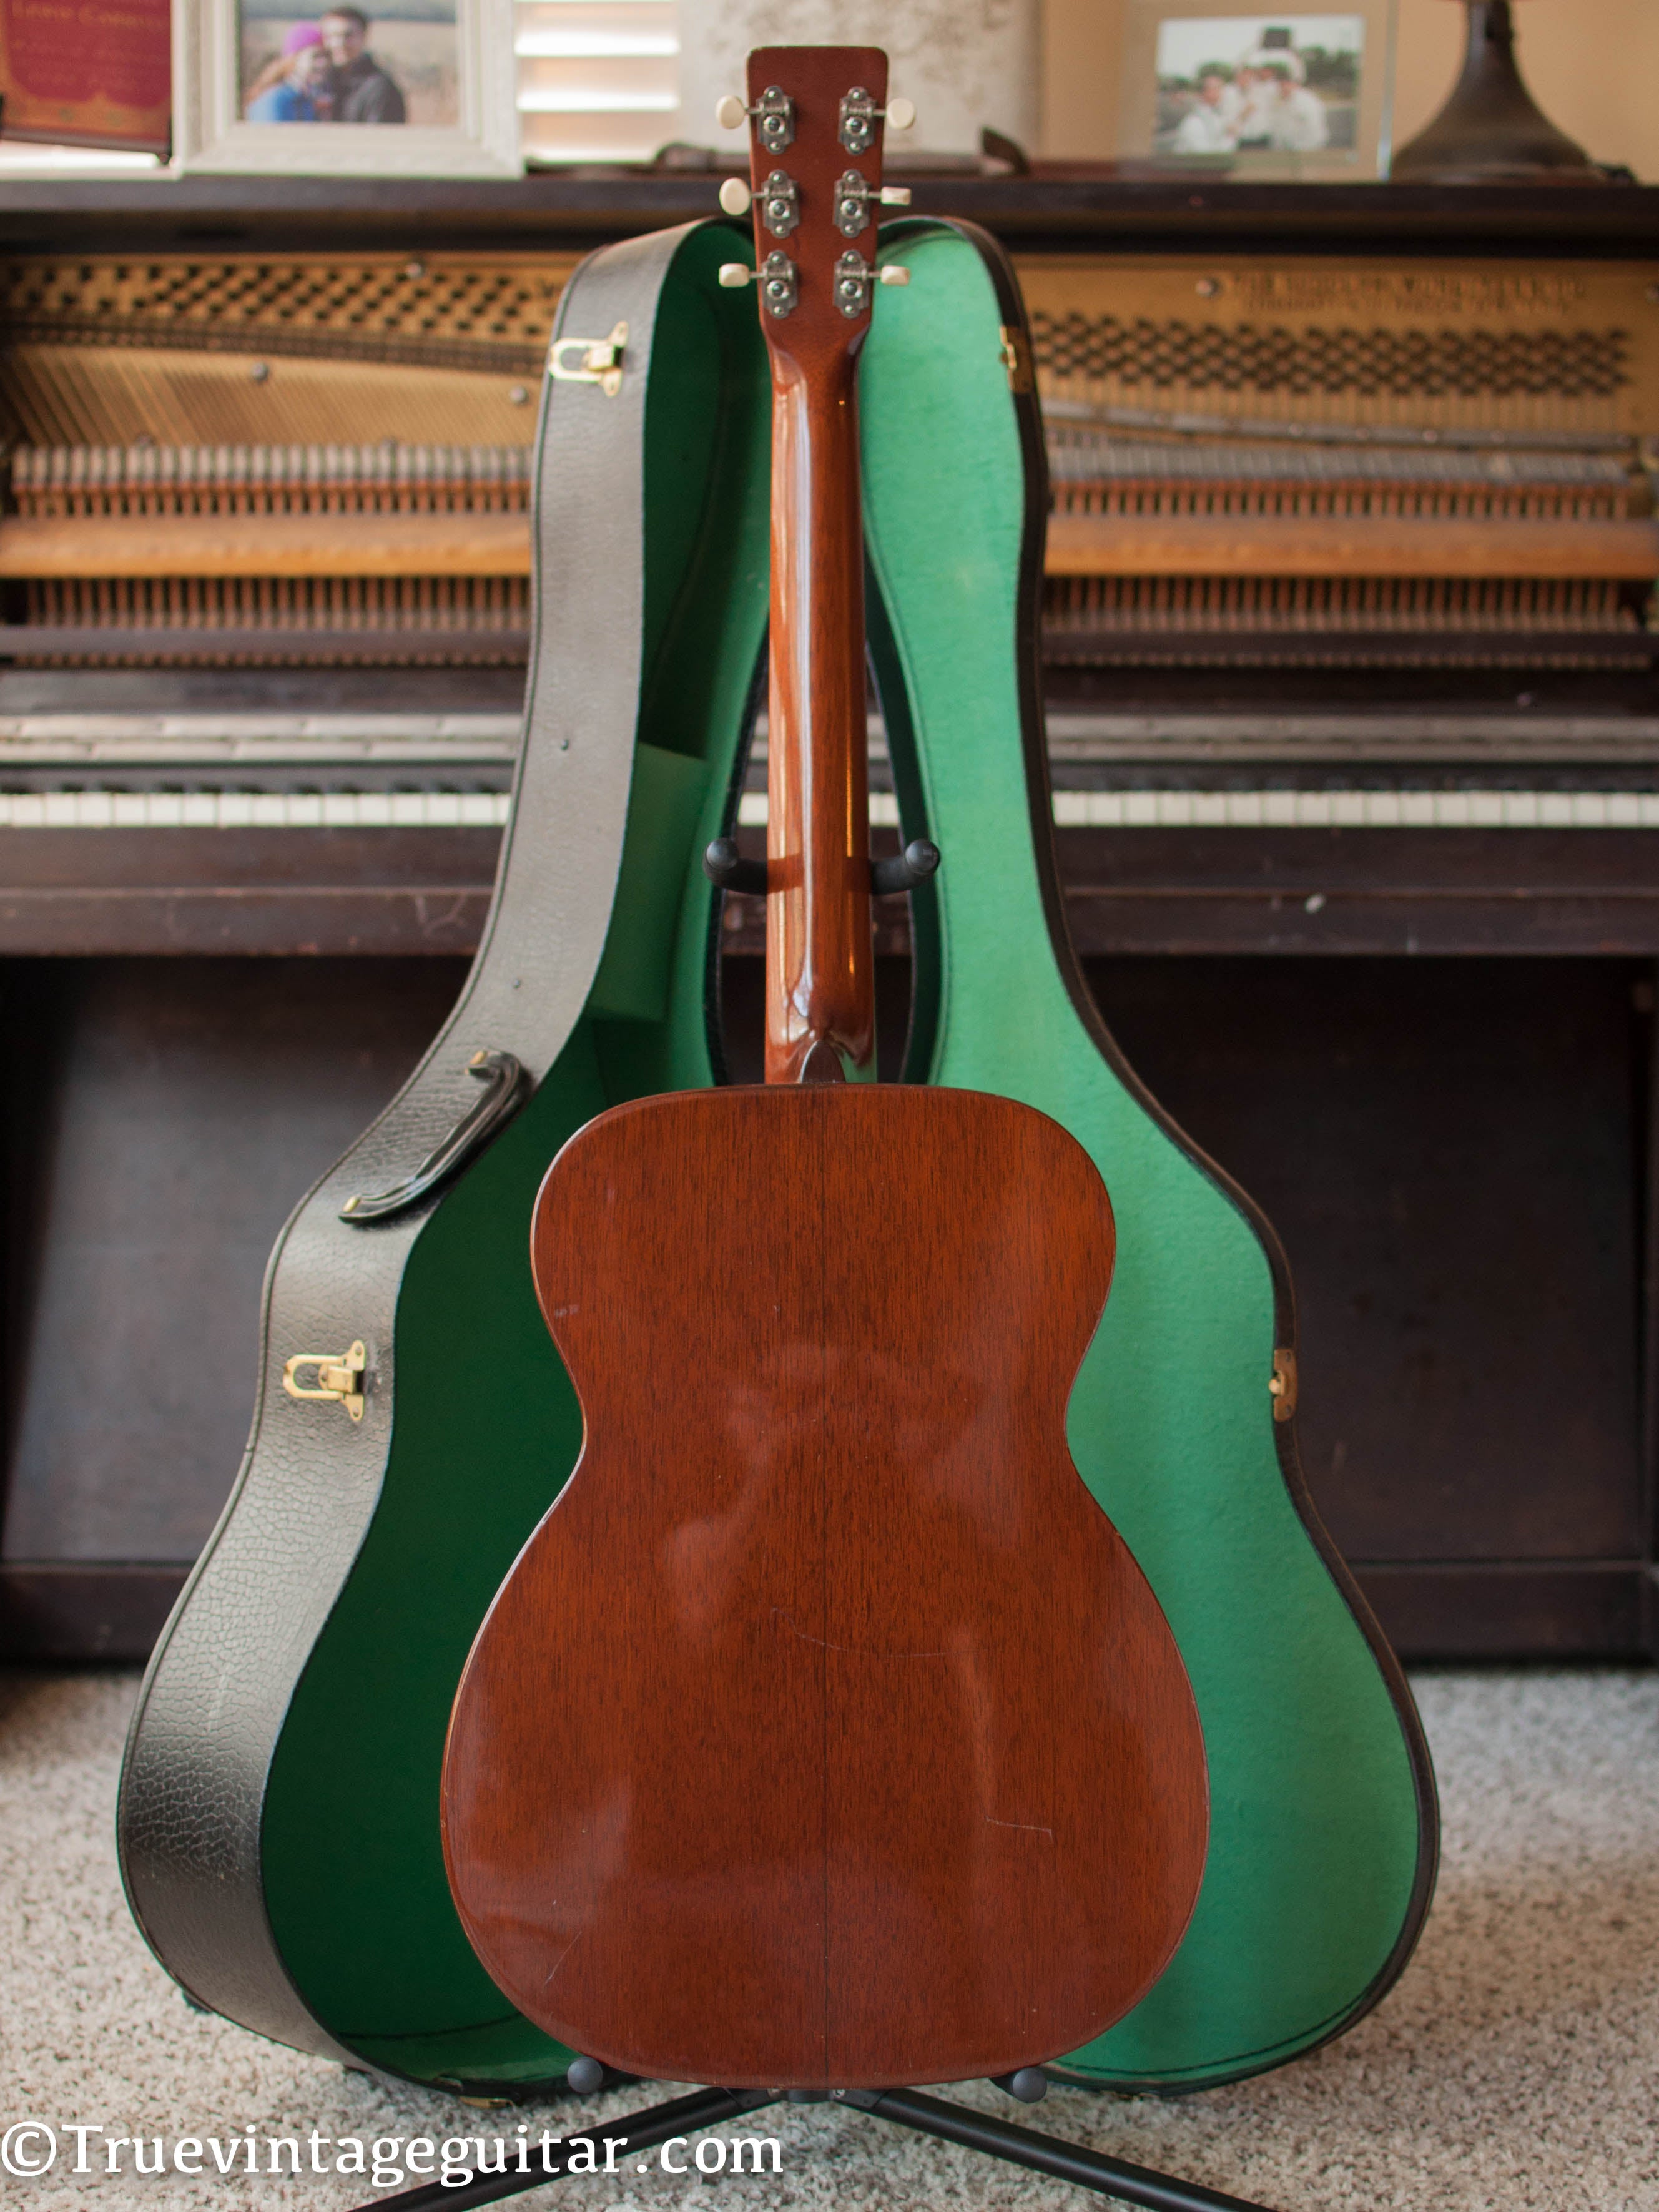 1954 Martin 00-17 Mahogany back and sides guitar